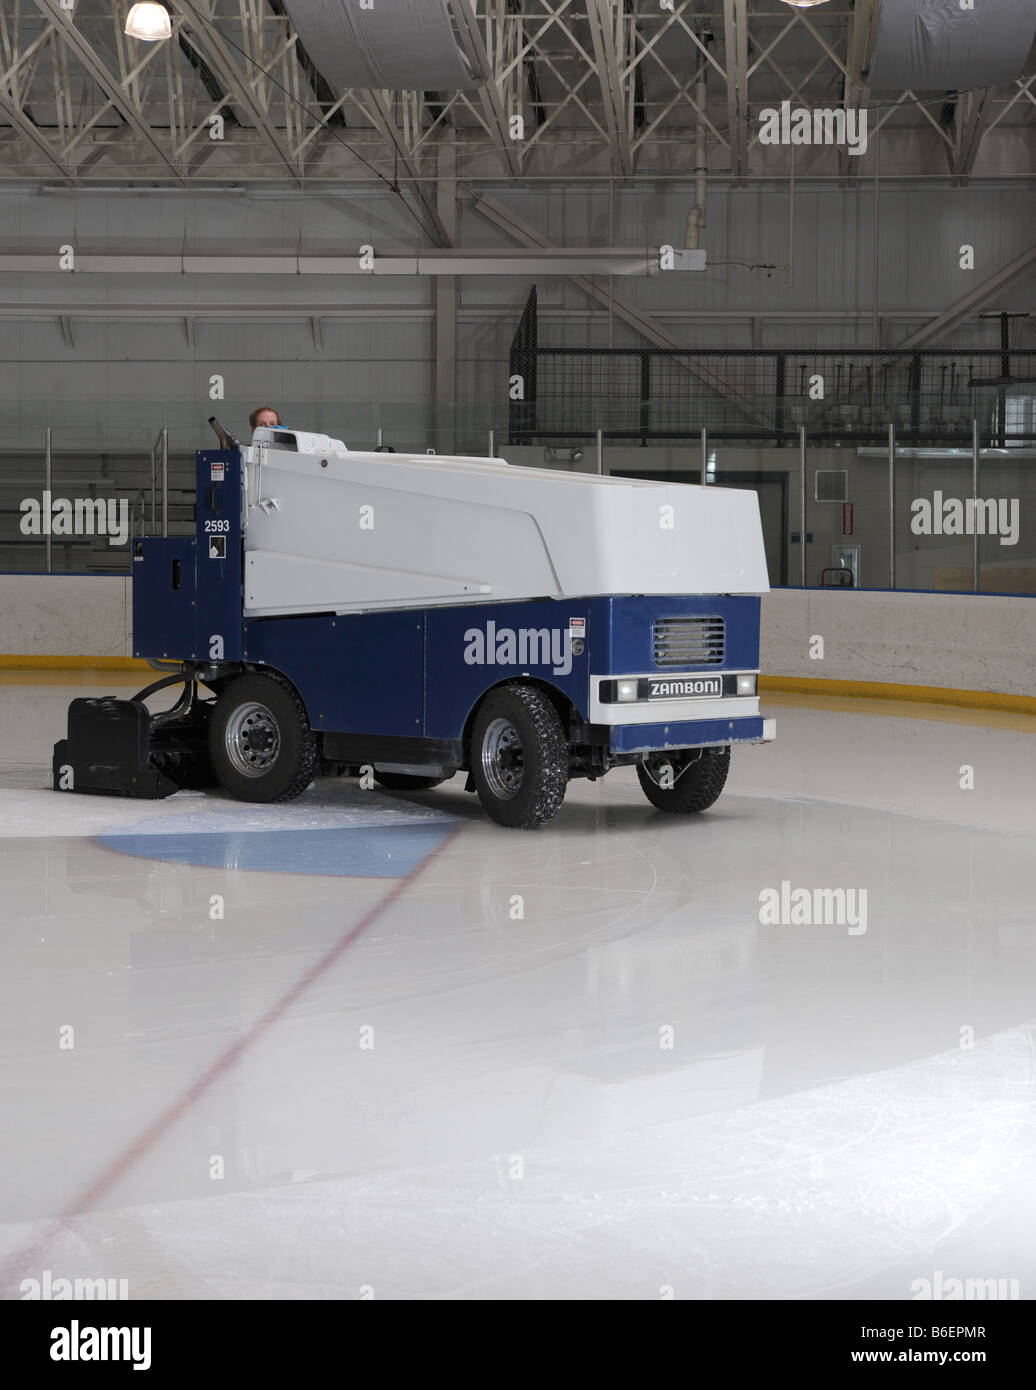 Nettoyage sur glace Zamboni une patinoire de hockey dans la région de Maryland USA Banque D'Images